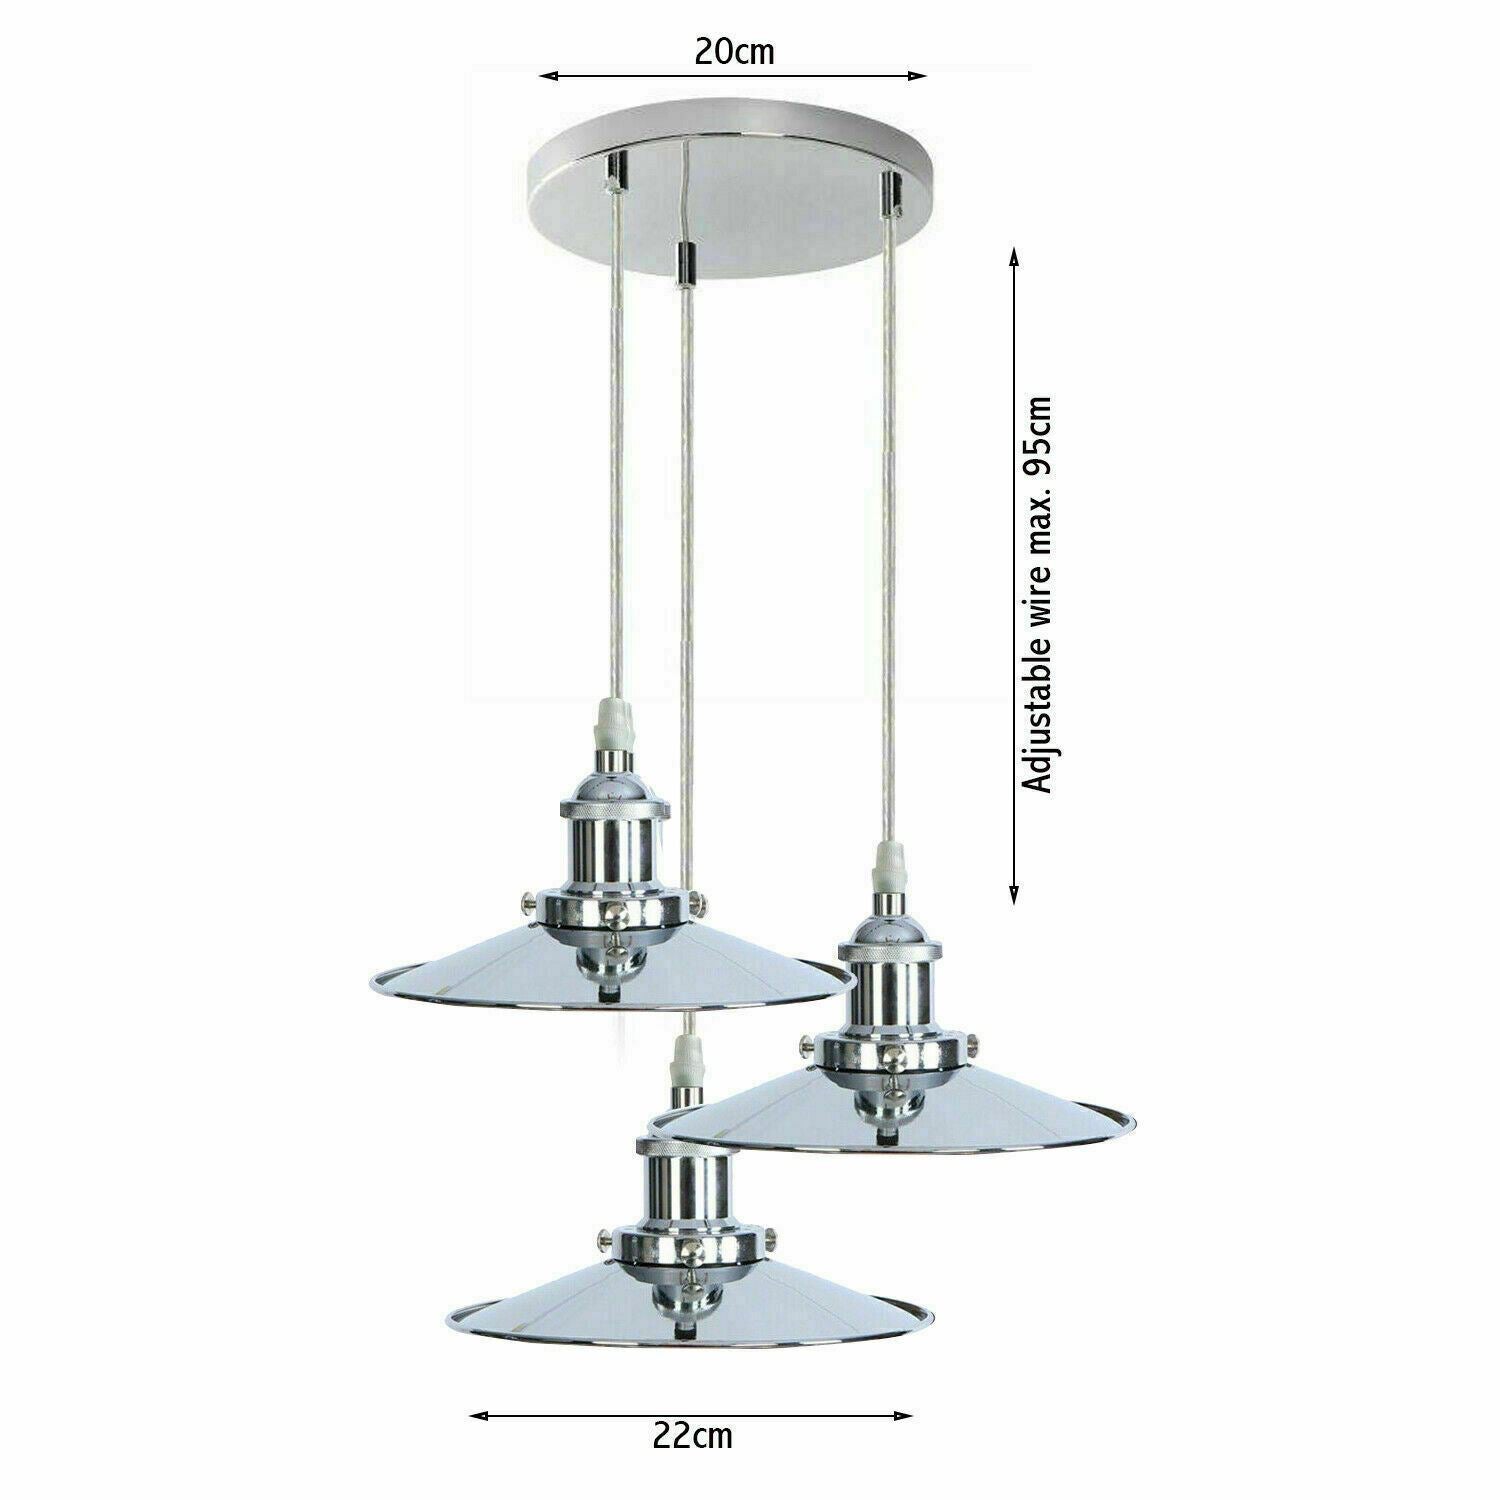 Vintage  Modern Metal Ceiling Pendant Light Chrome Hanging Lamp With 95cm Adjustable Wire~1337 - LEDSone UK Ltd